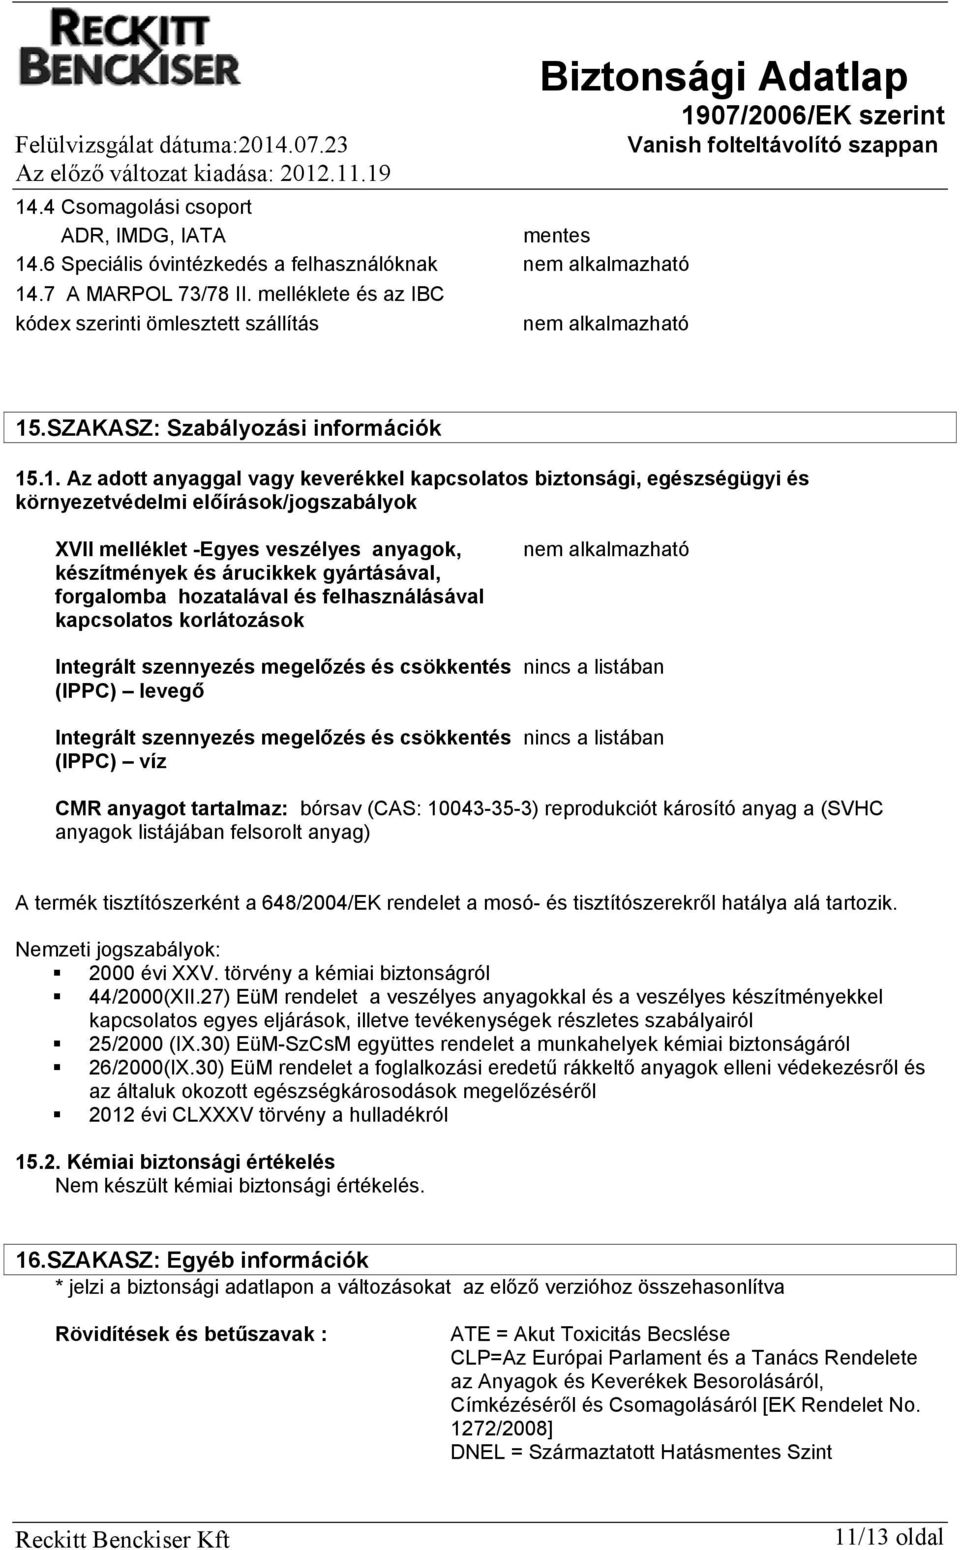 Biztonsági Adatlap 1907/2006/EK szerint Vanish folteltávolító szappan - PDF  Ingyenes letöltés